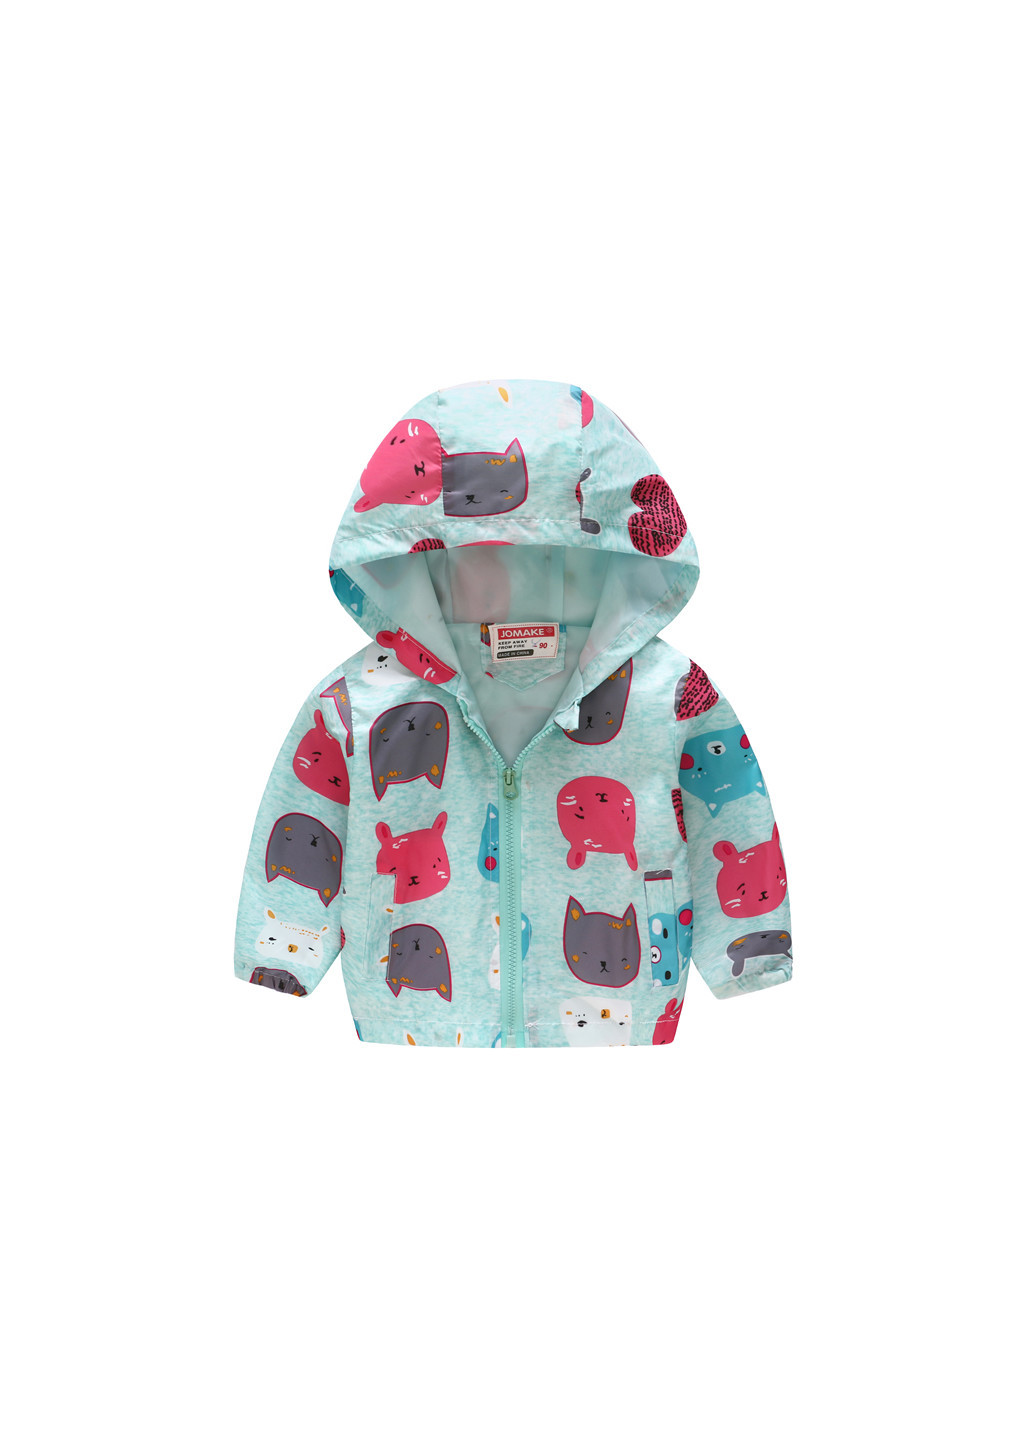 Бирюзовая демисезонная куртка-ветровка для девочки разноцветные звери Jomake 51156